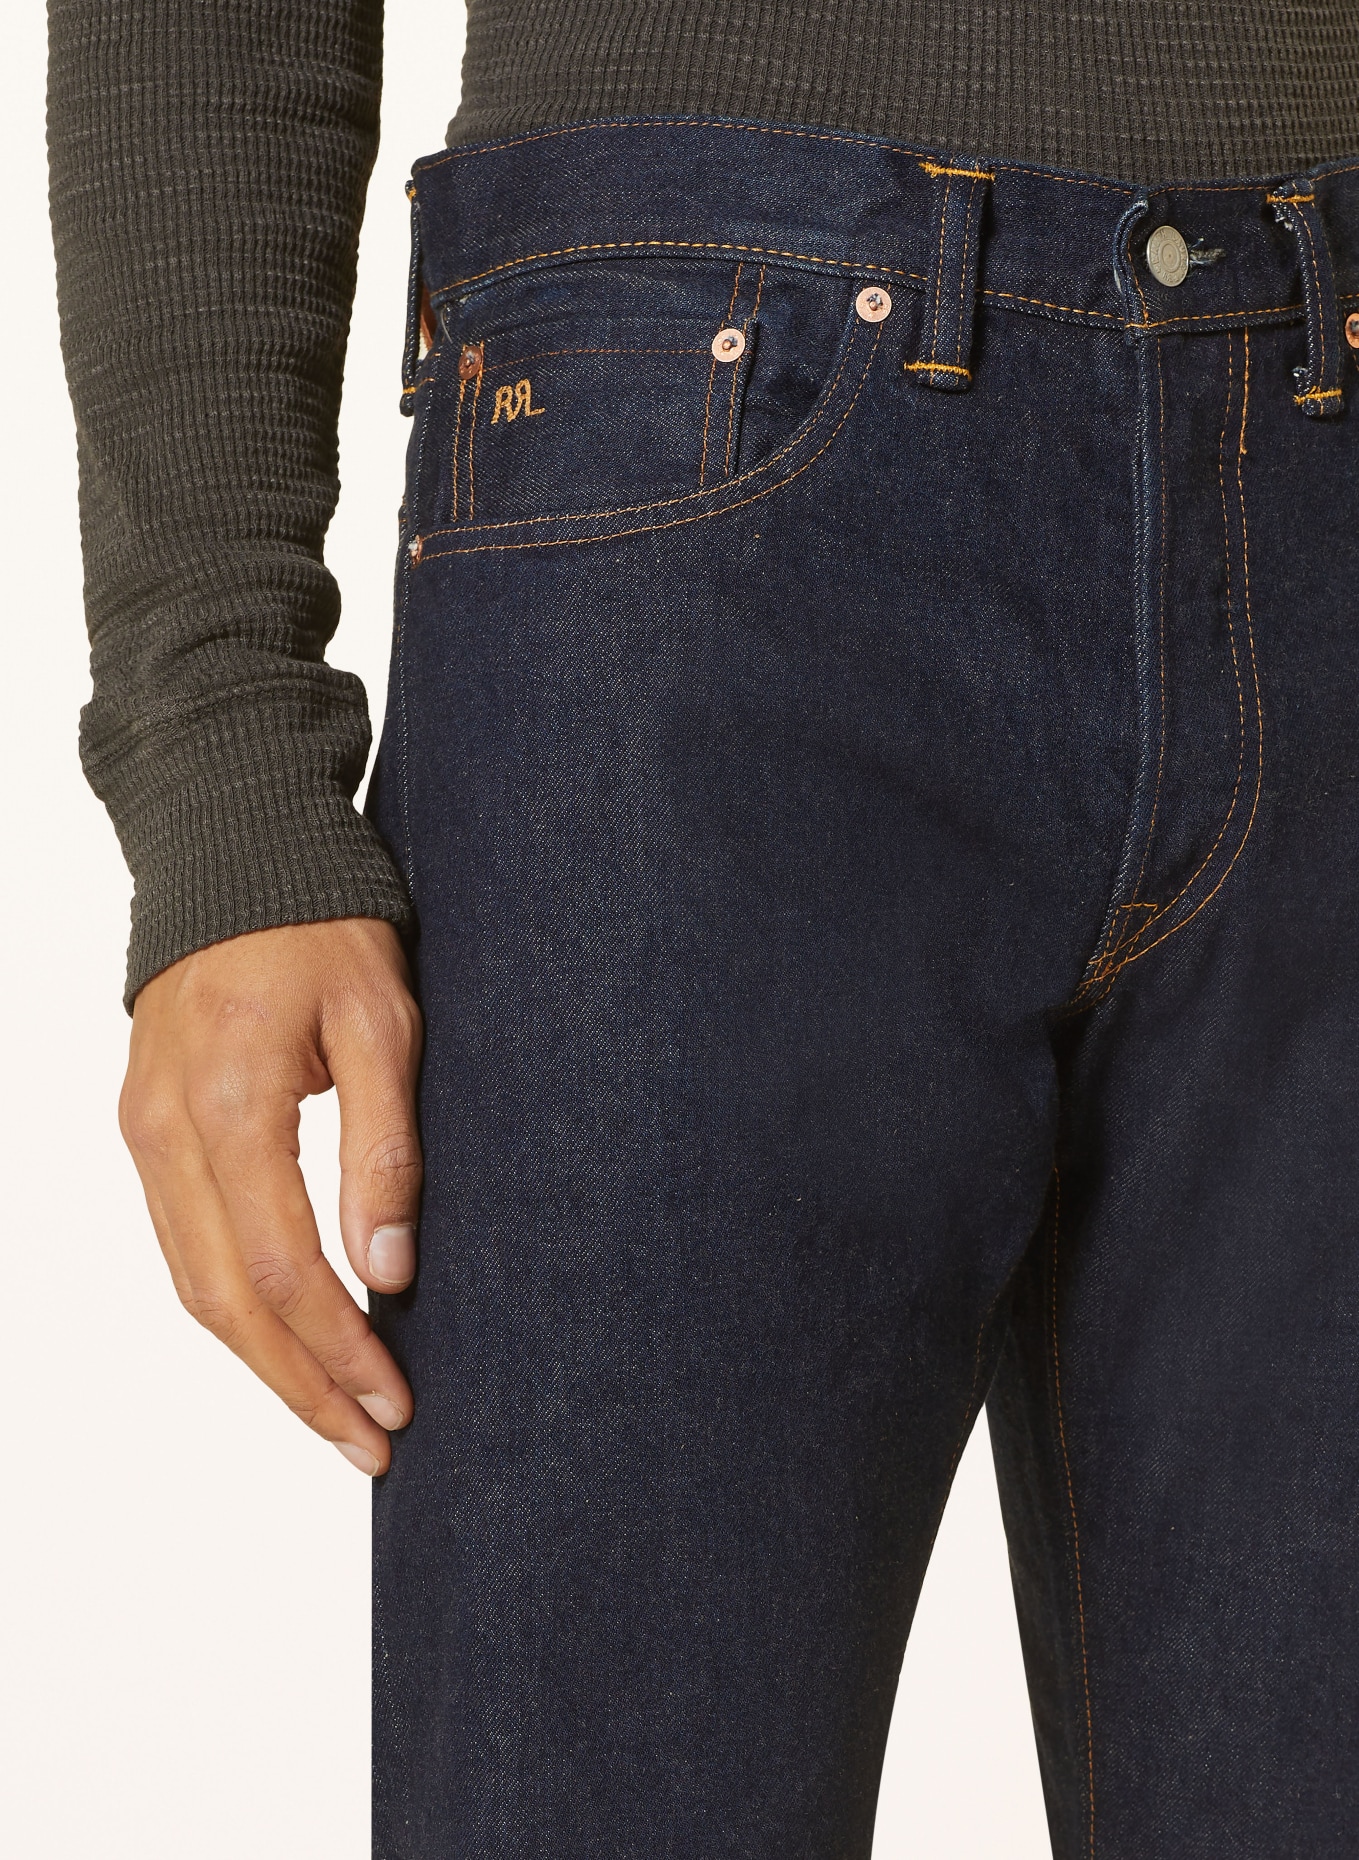 RRL Jeans slim fit, Color: 001 ONCE WASHED 3 (Image 5)